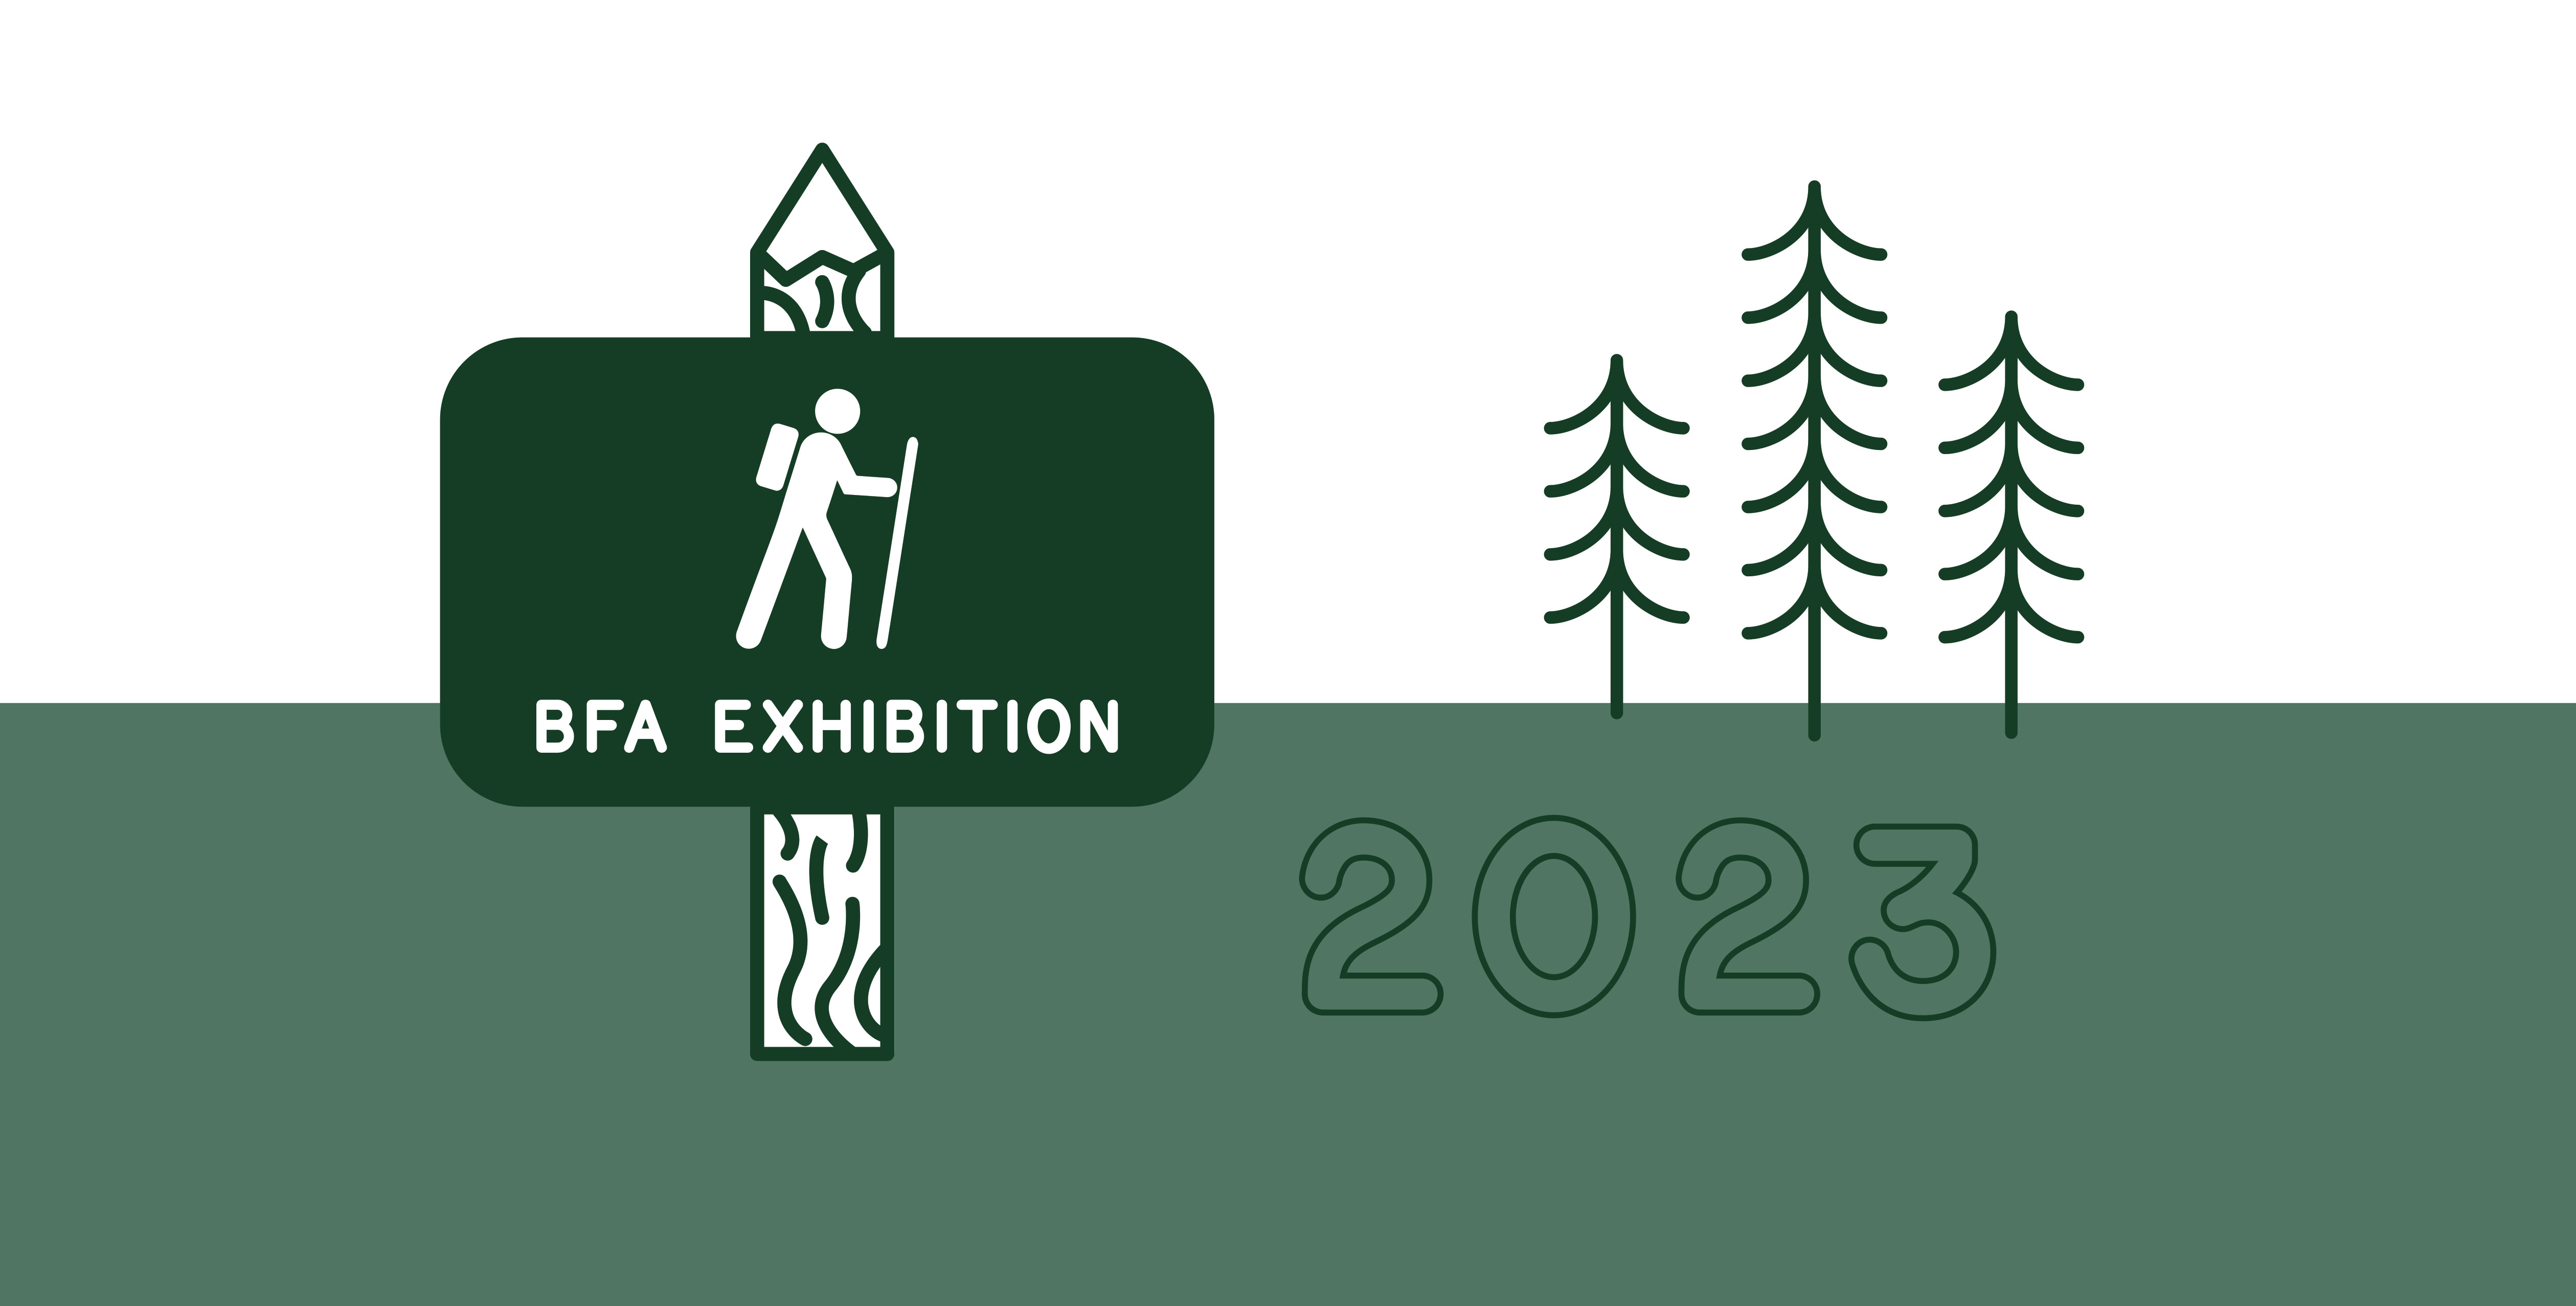 BFA Exhibition 2023 graphic (April 7-April 29)